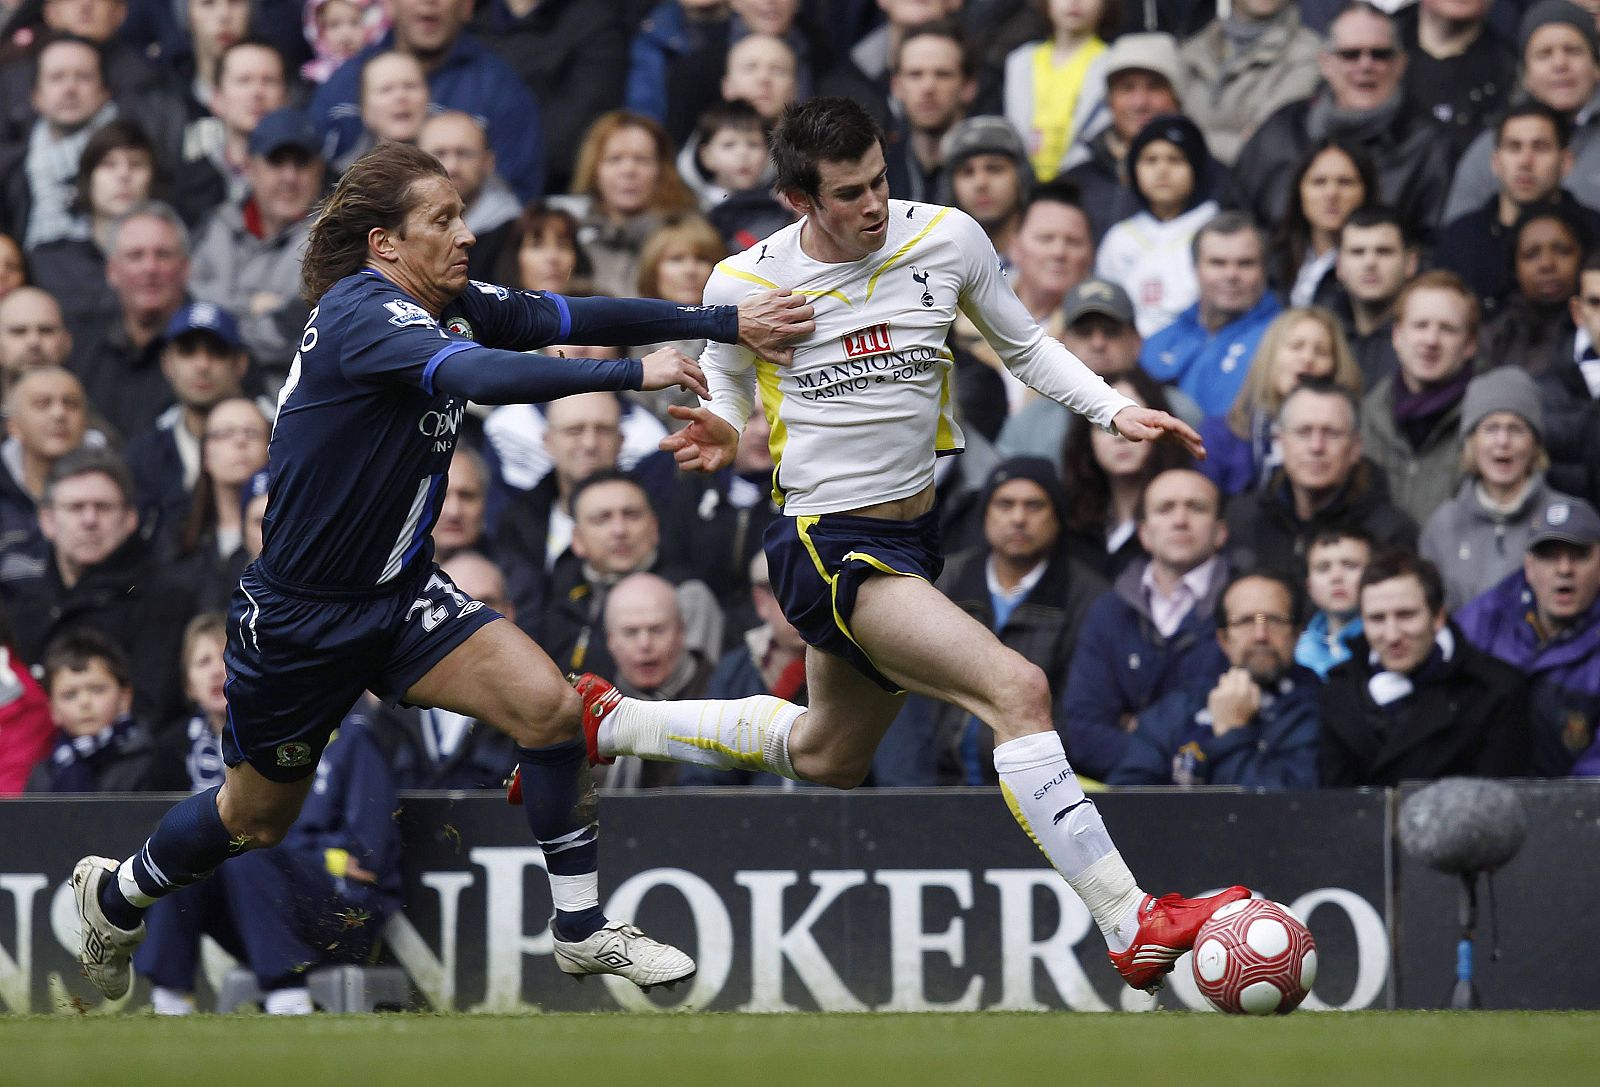 Míchel Salgado disputa un balón con Gareth Bale, del Tottenham Hotspur.